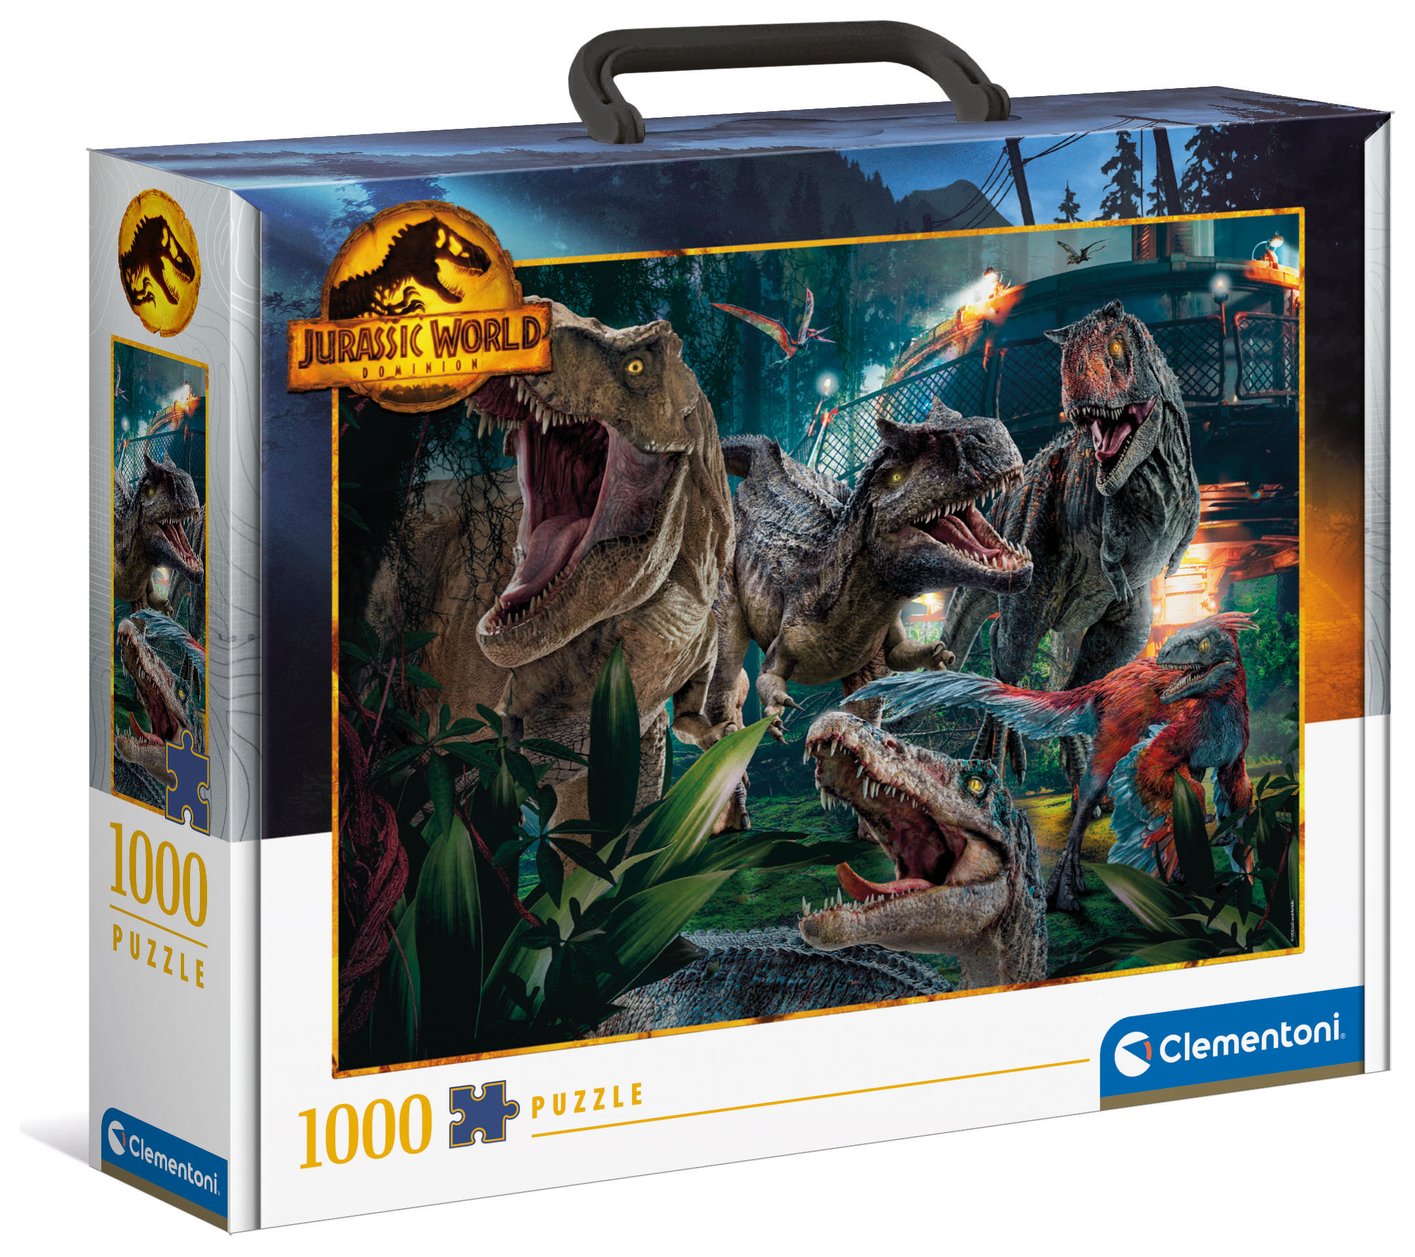 Jurassic World Brief Case 1000-Piece Puzzle